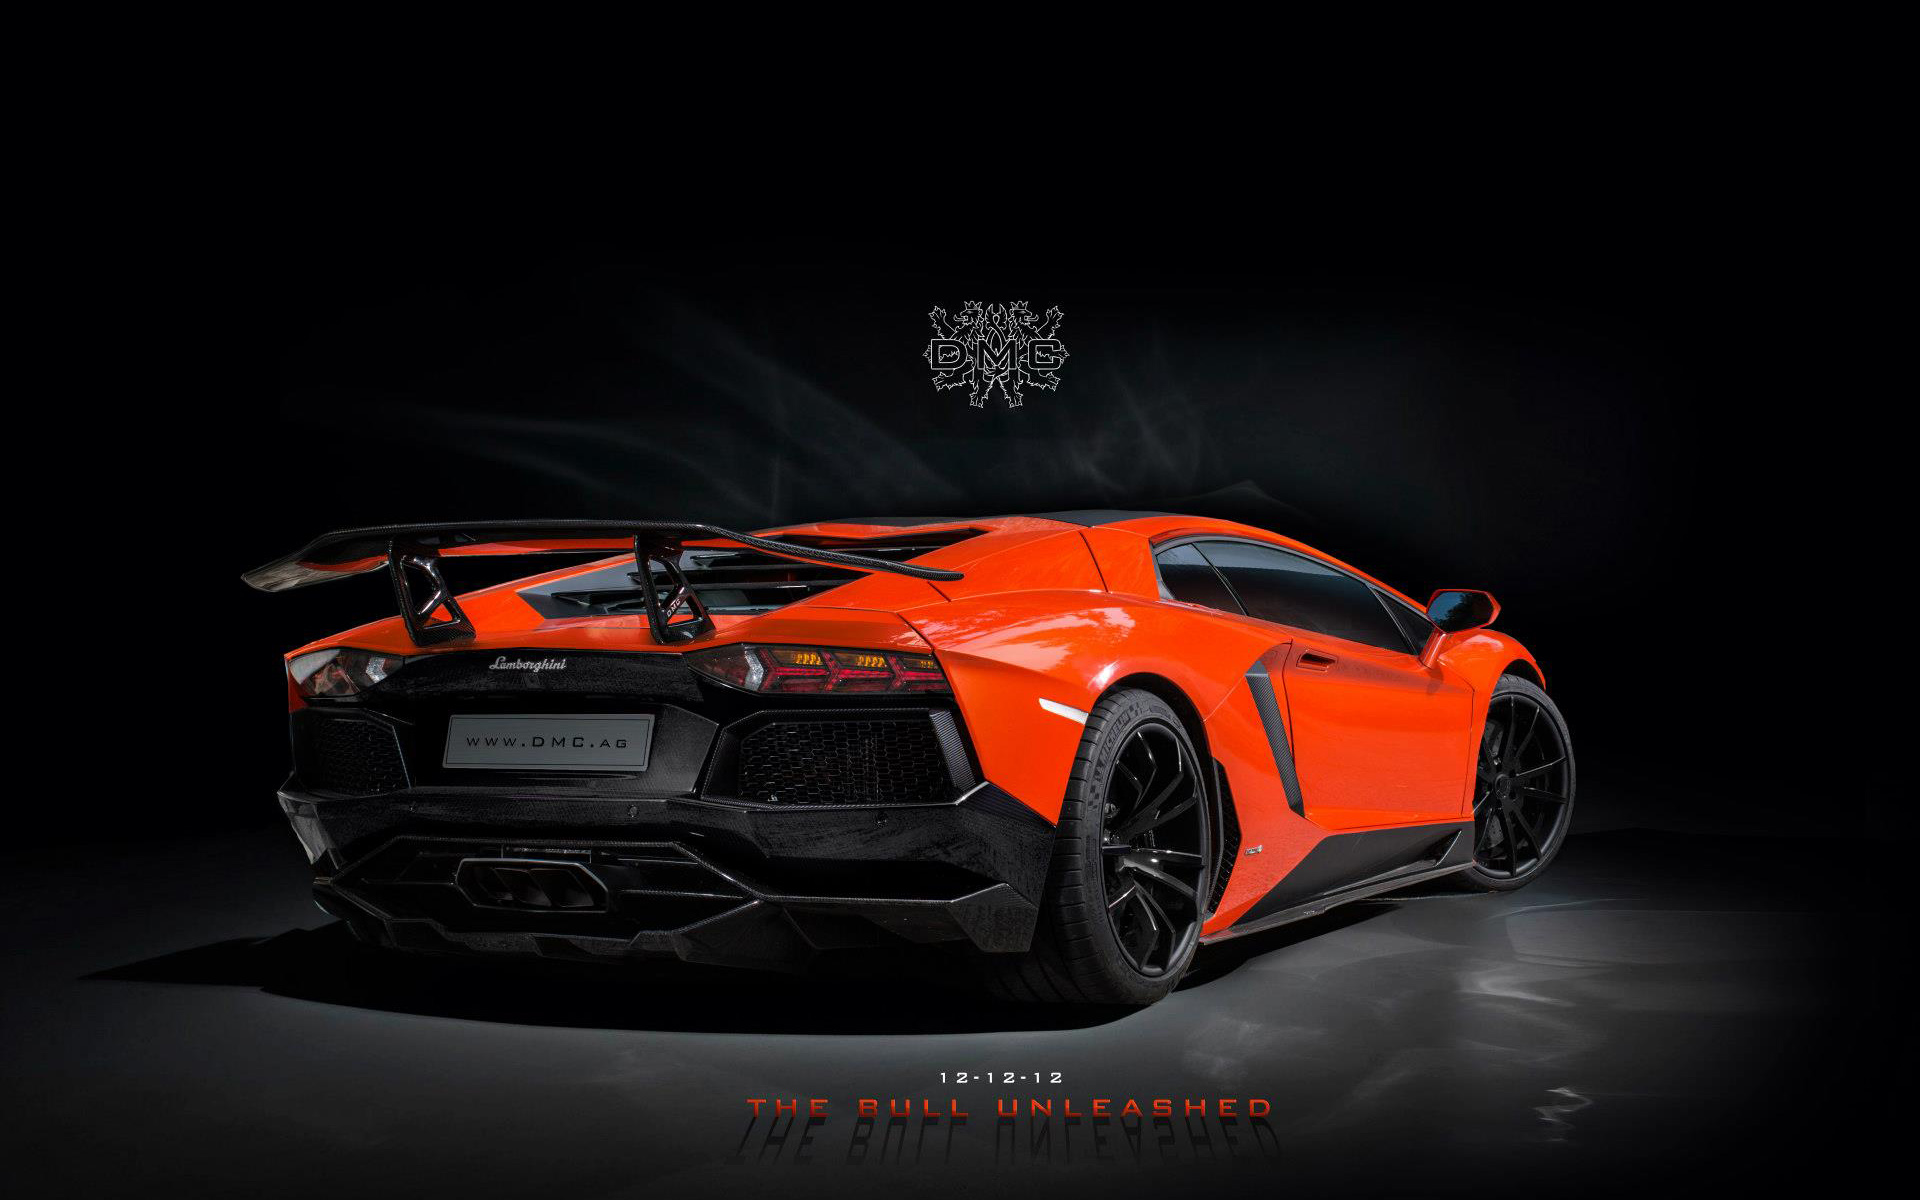 HD Wallpapers Lamborghini Aventador - WallpaperSafari